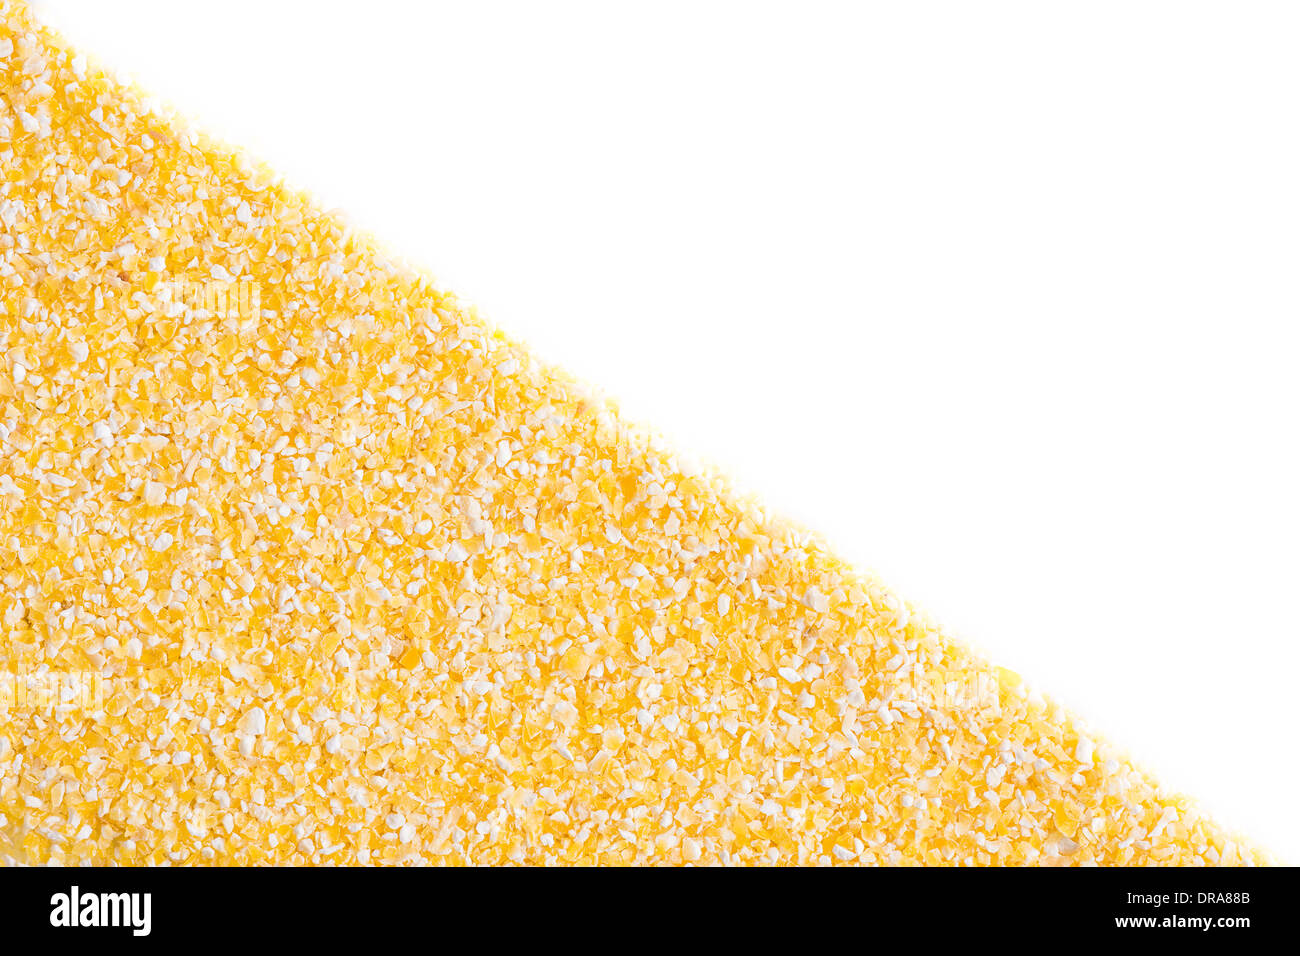 Corn grits on white background, diagonal split. Stock Photo